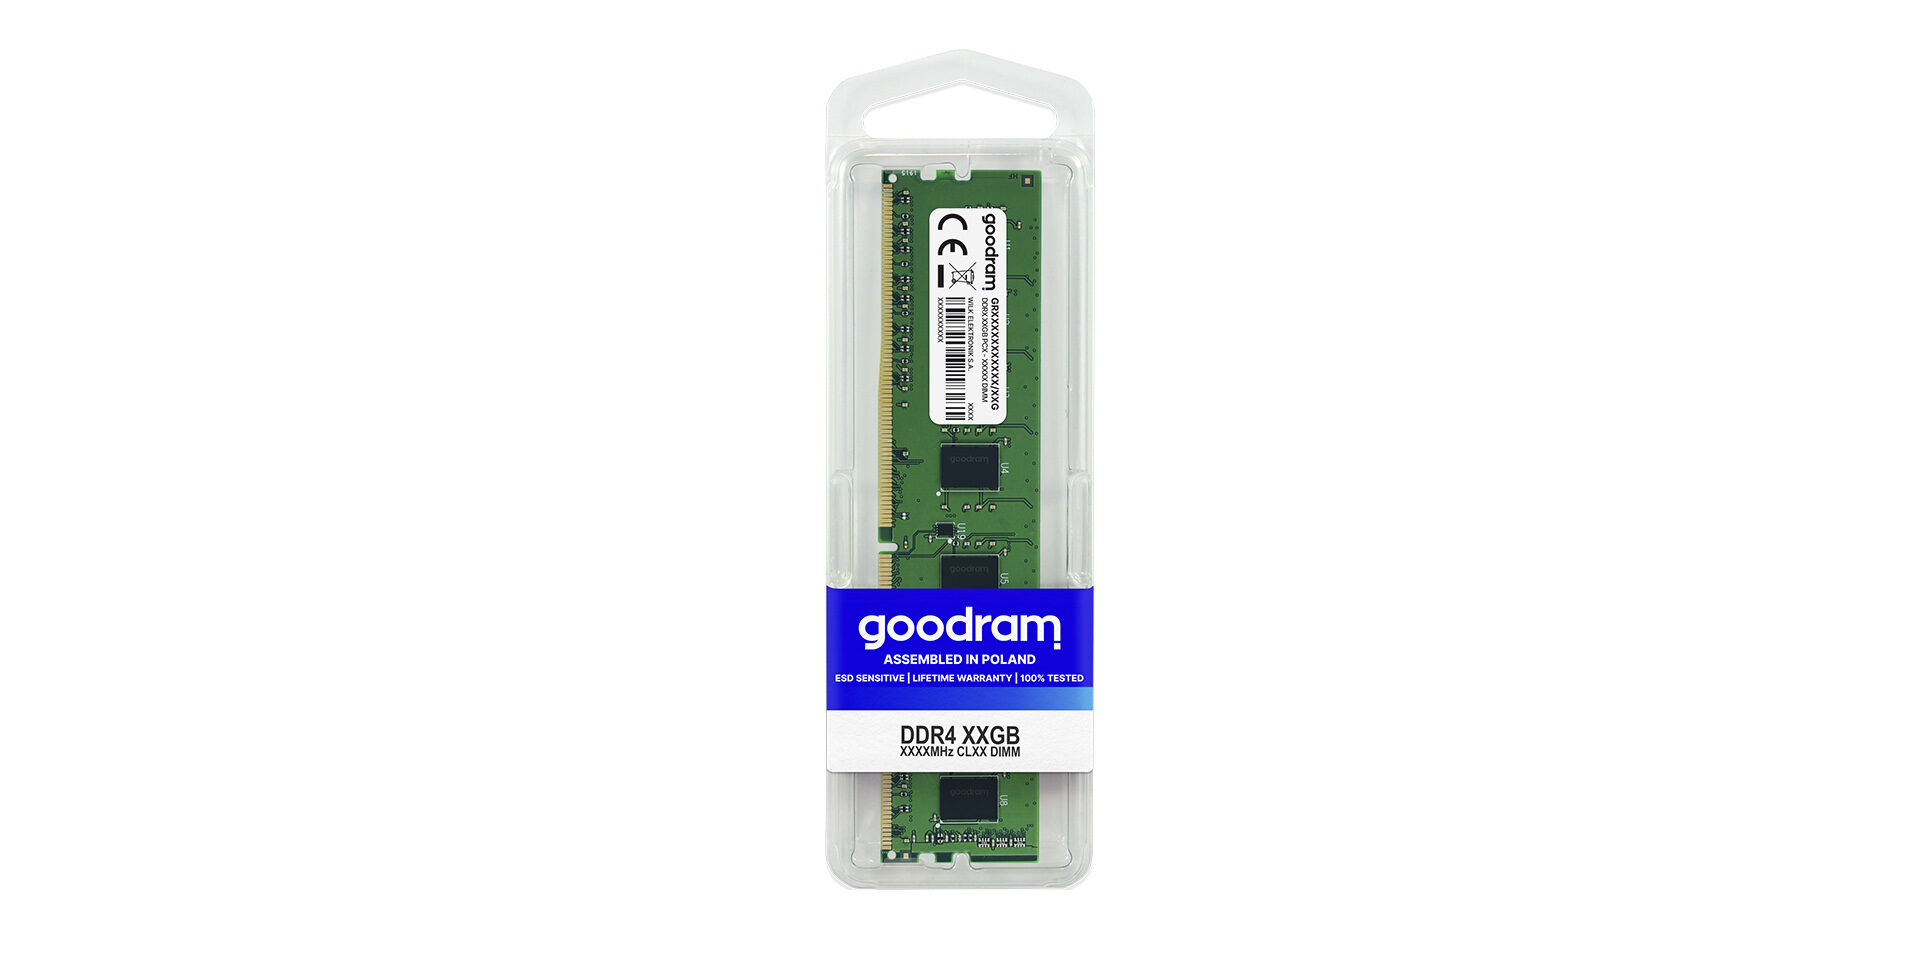 SSD DDR4 DIMM marki Goodram w opakowaniu